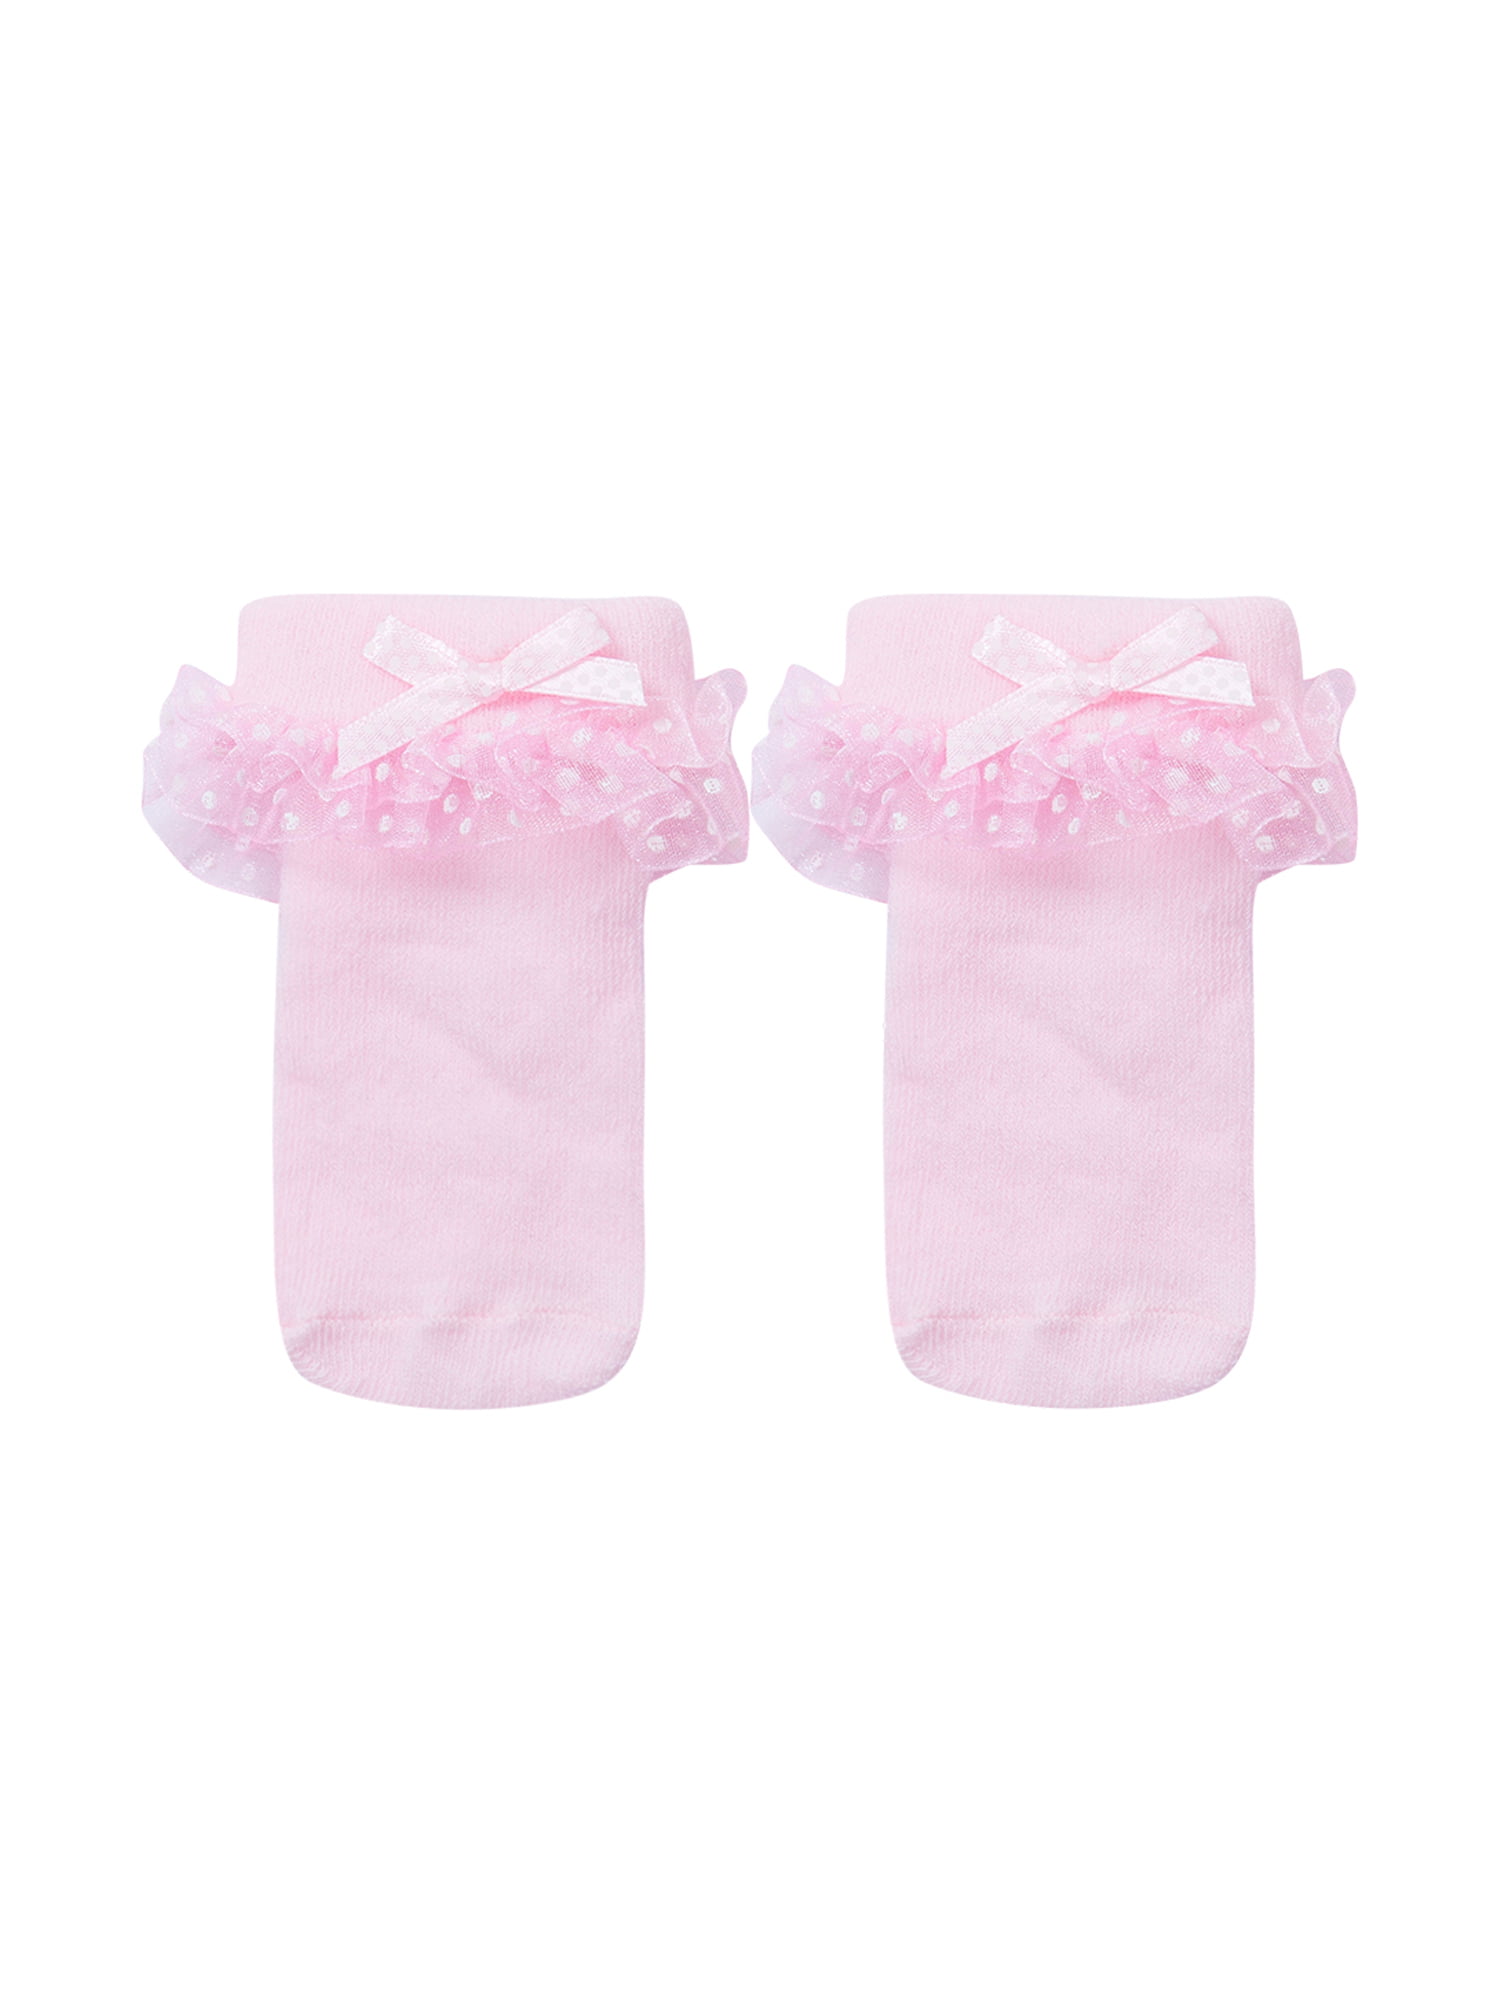 Handmade pink gingham baby/ girls frilly socks various sizes